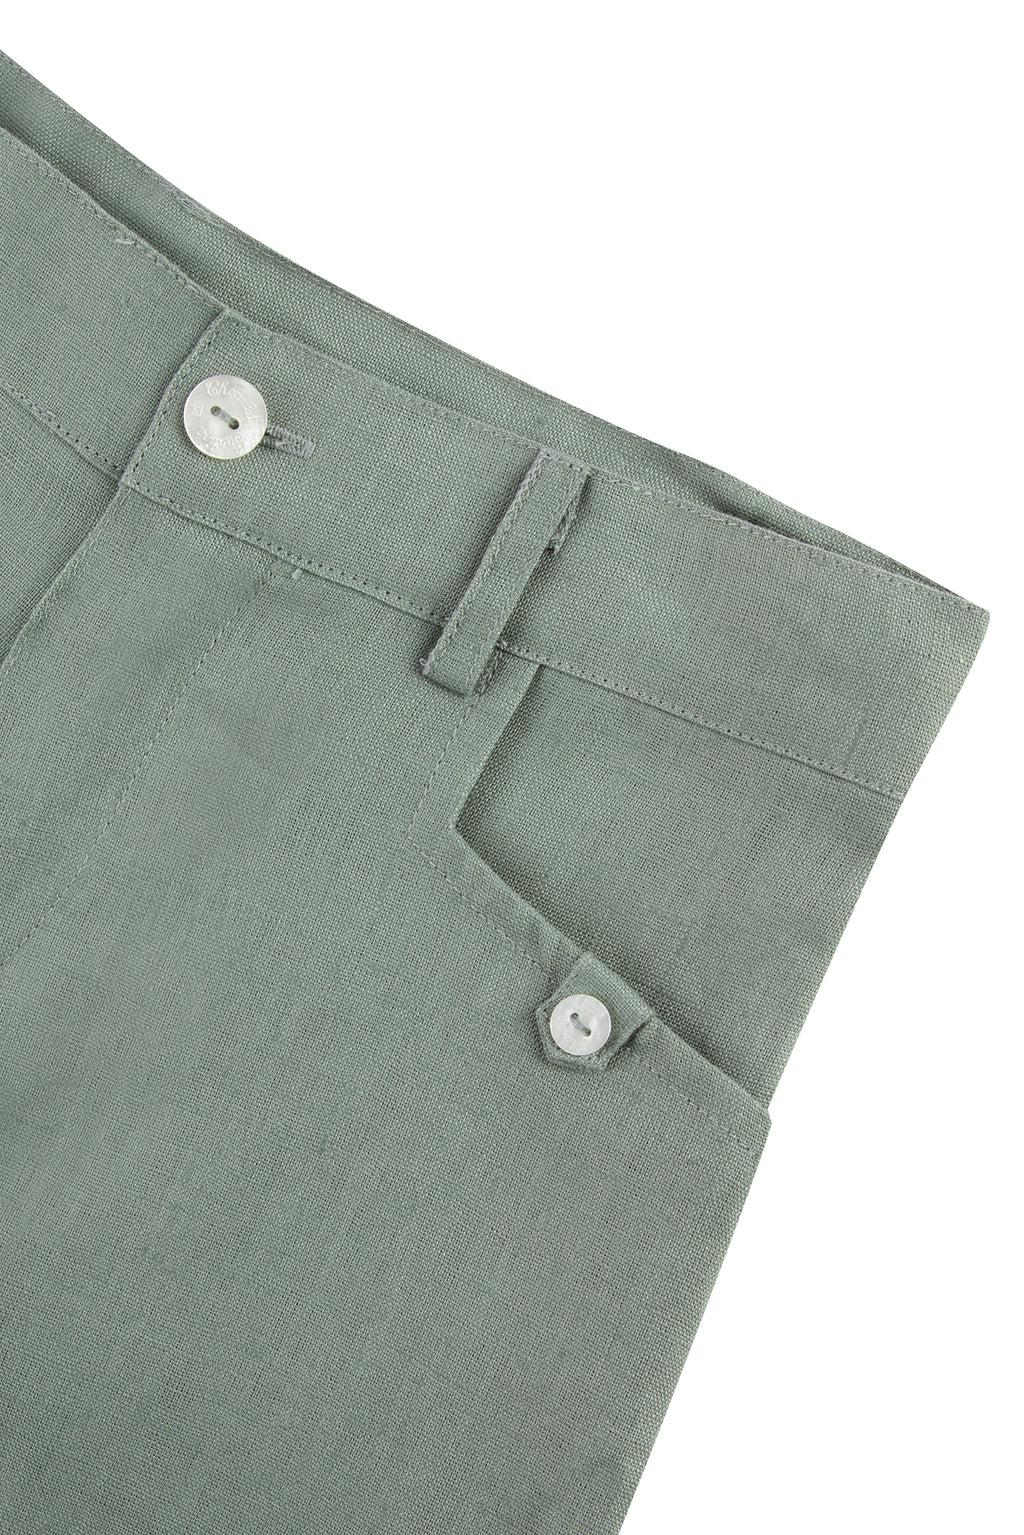 Short - Green Linen